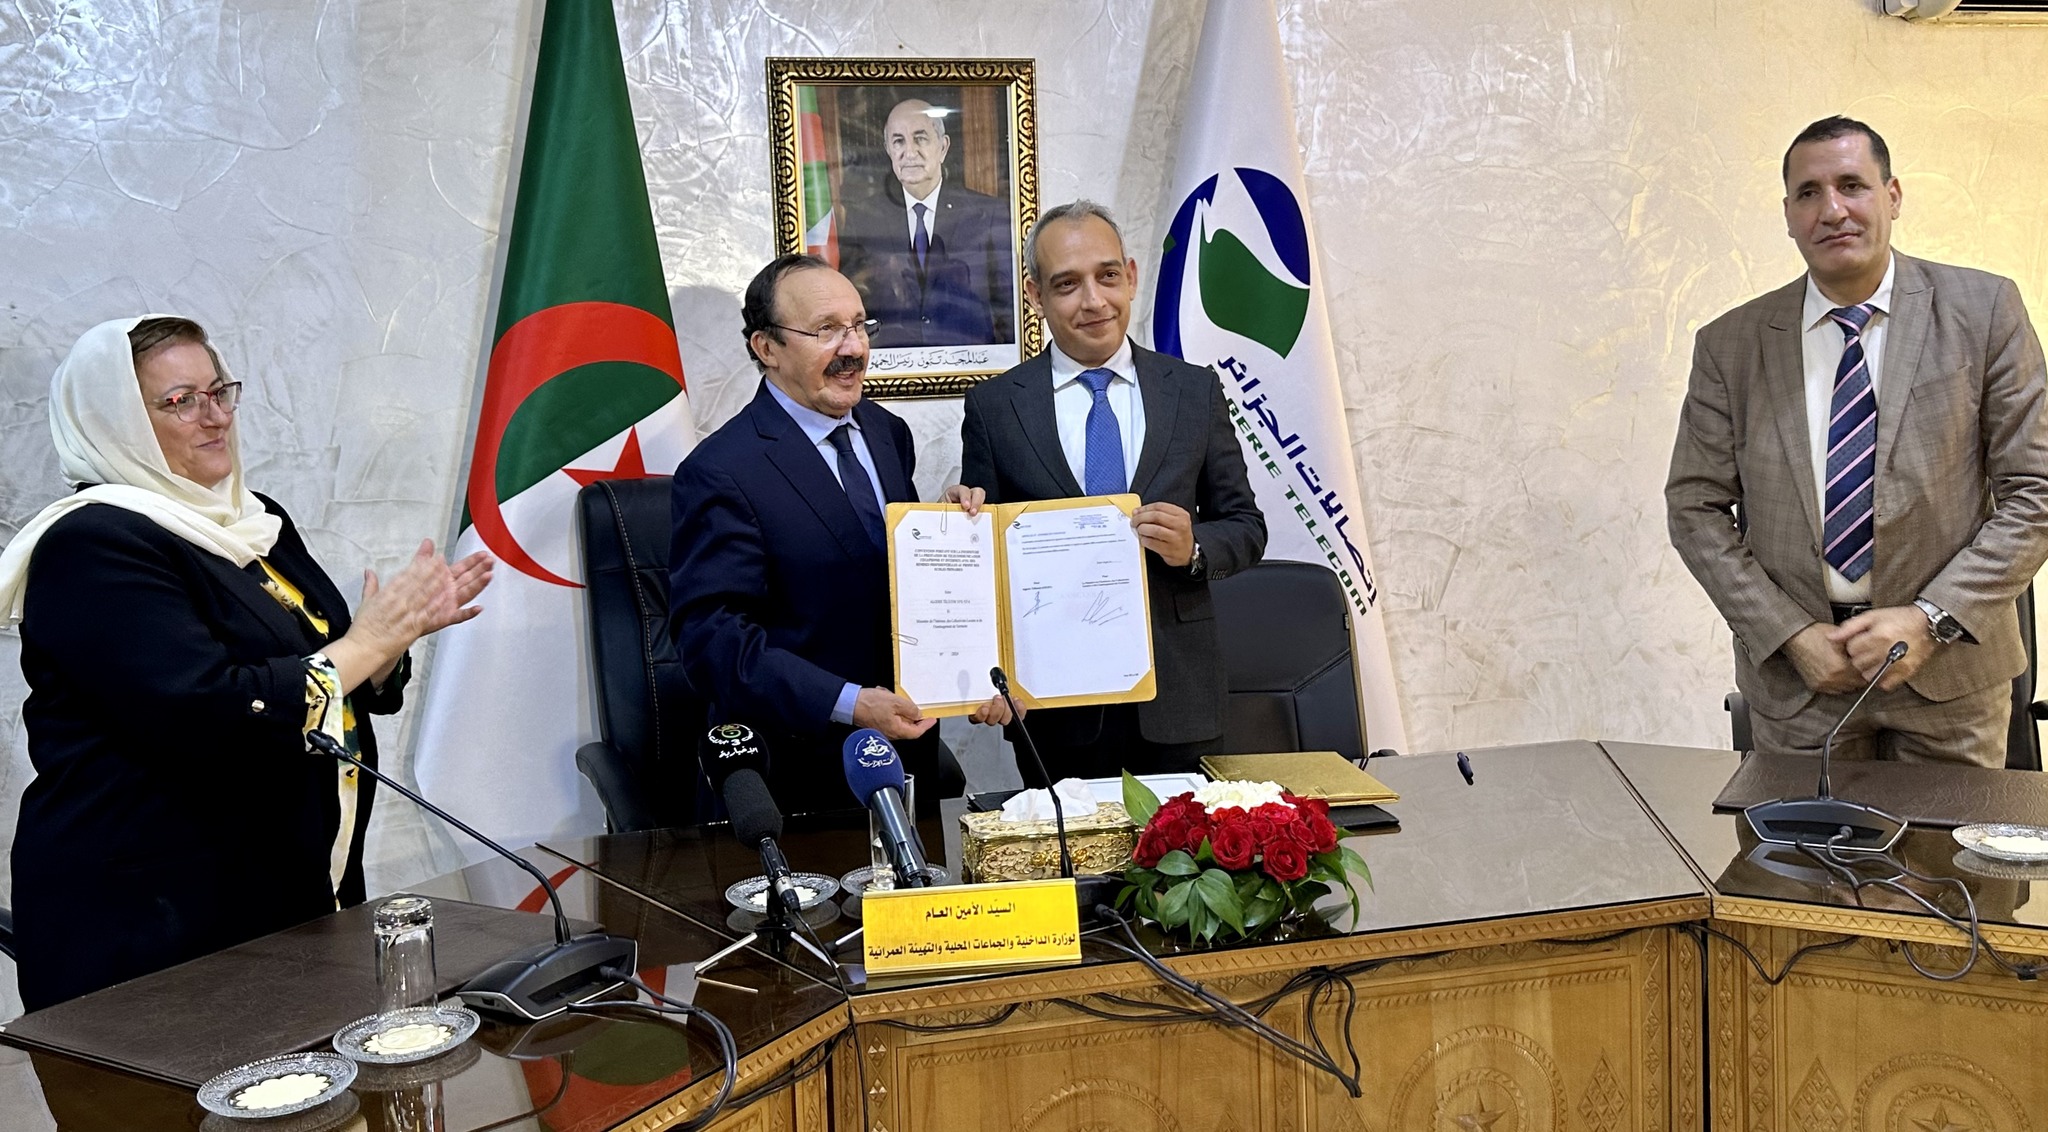 التوقيع على اتفاقية بين إتصالات الجزائر ووزارة الداخلية والجماعات المحلية والتهيئة العمرانية :  أسعار تفضيلية لفائدة المدارس الابتدائية !